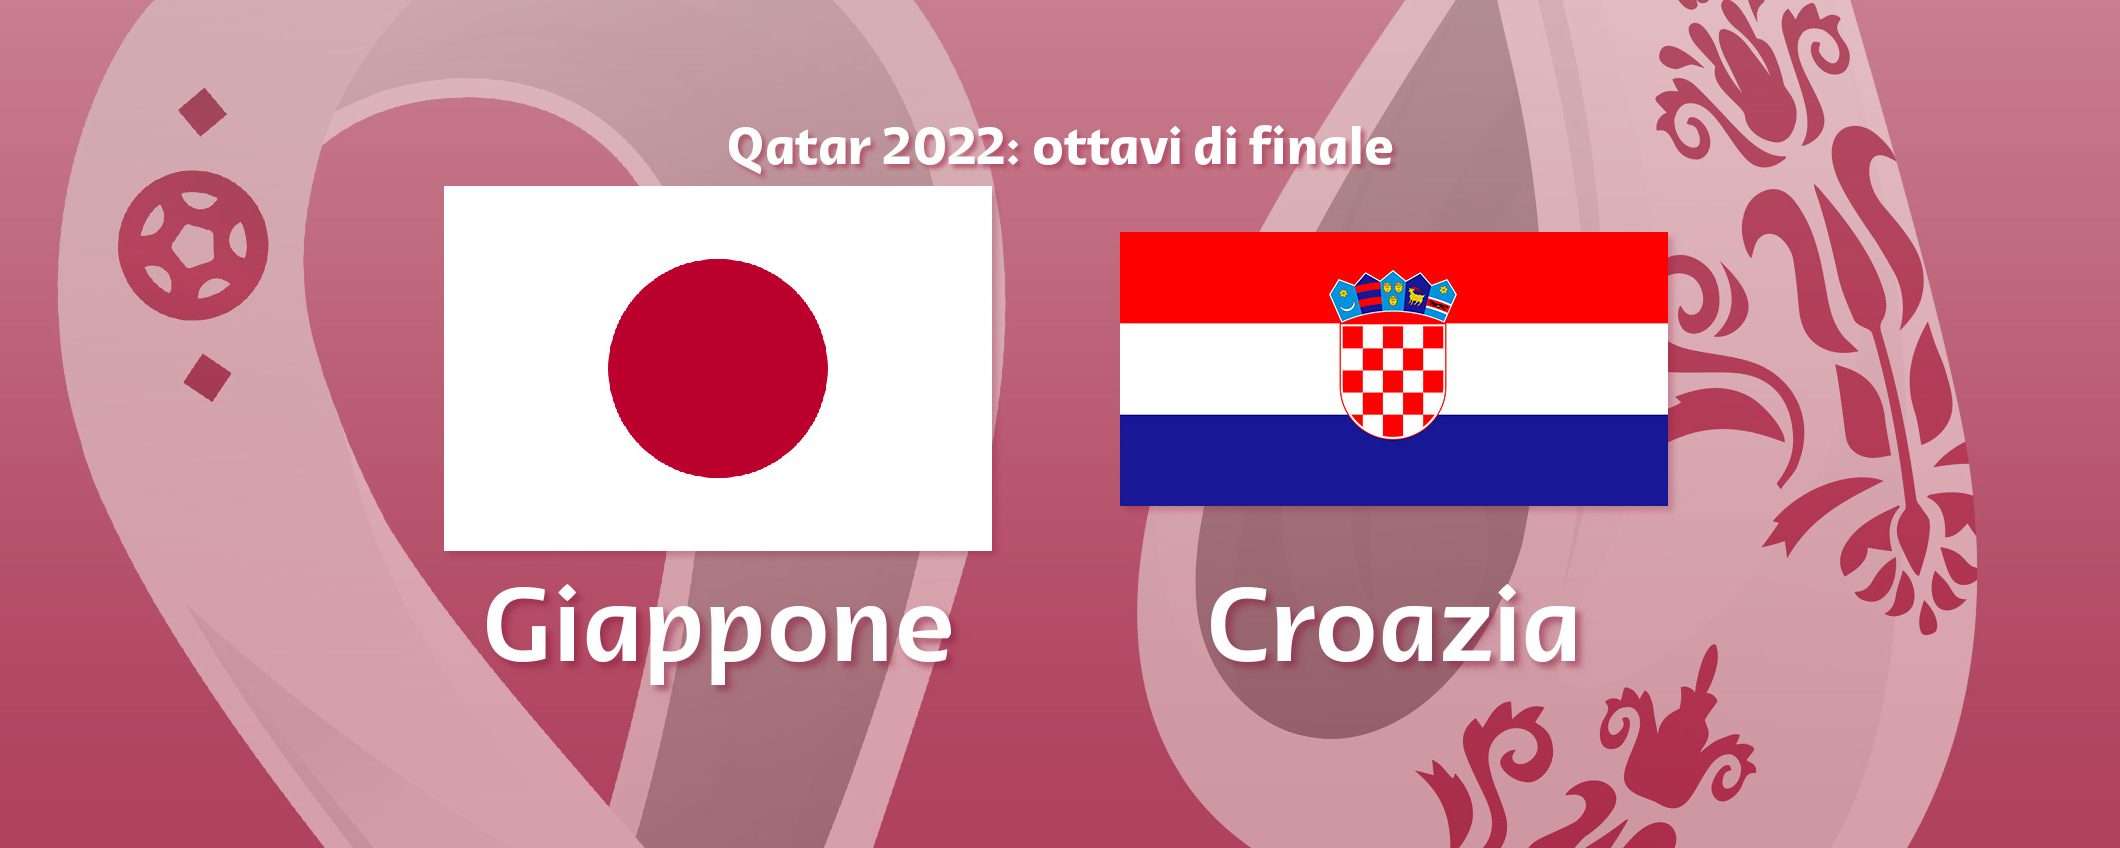 Come vedere Giappone-Croazia in streaming